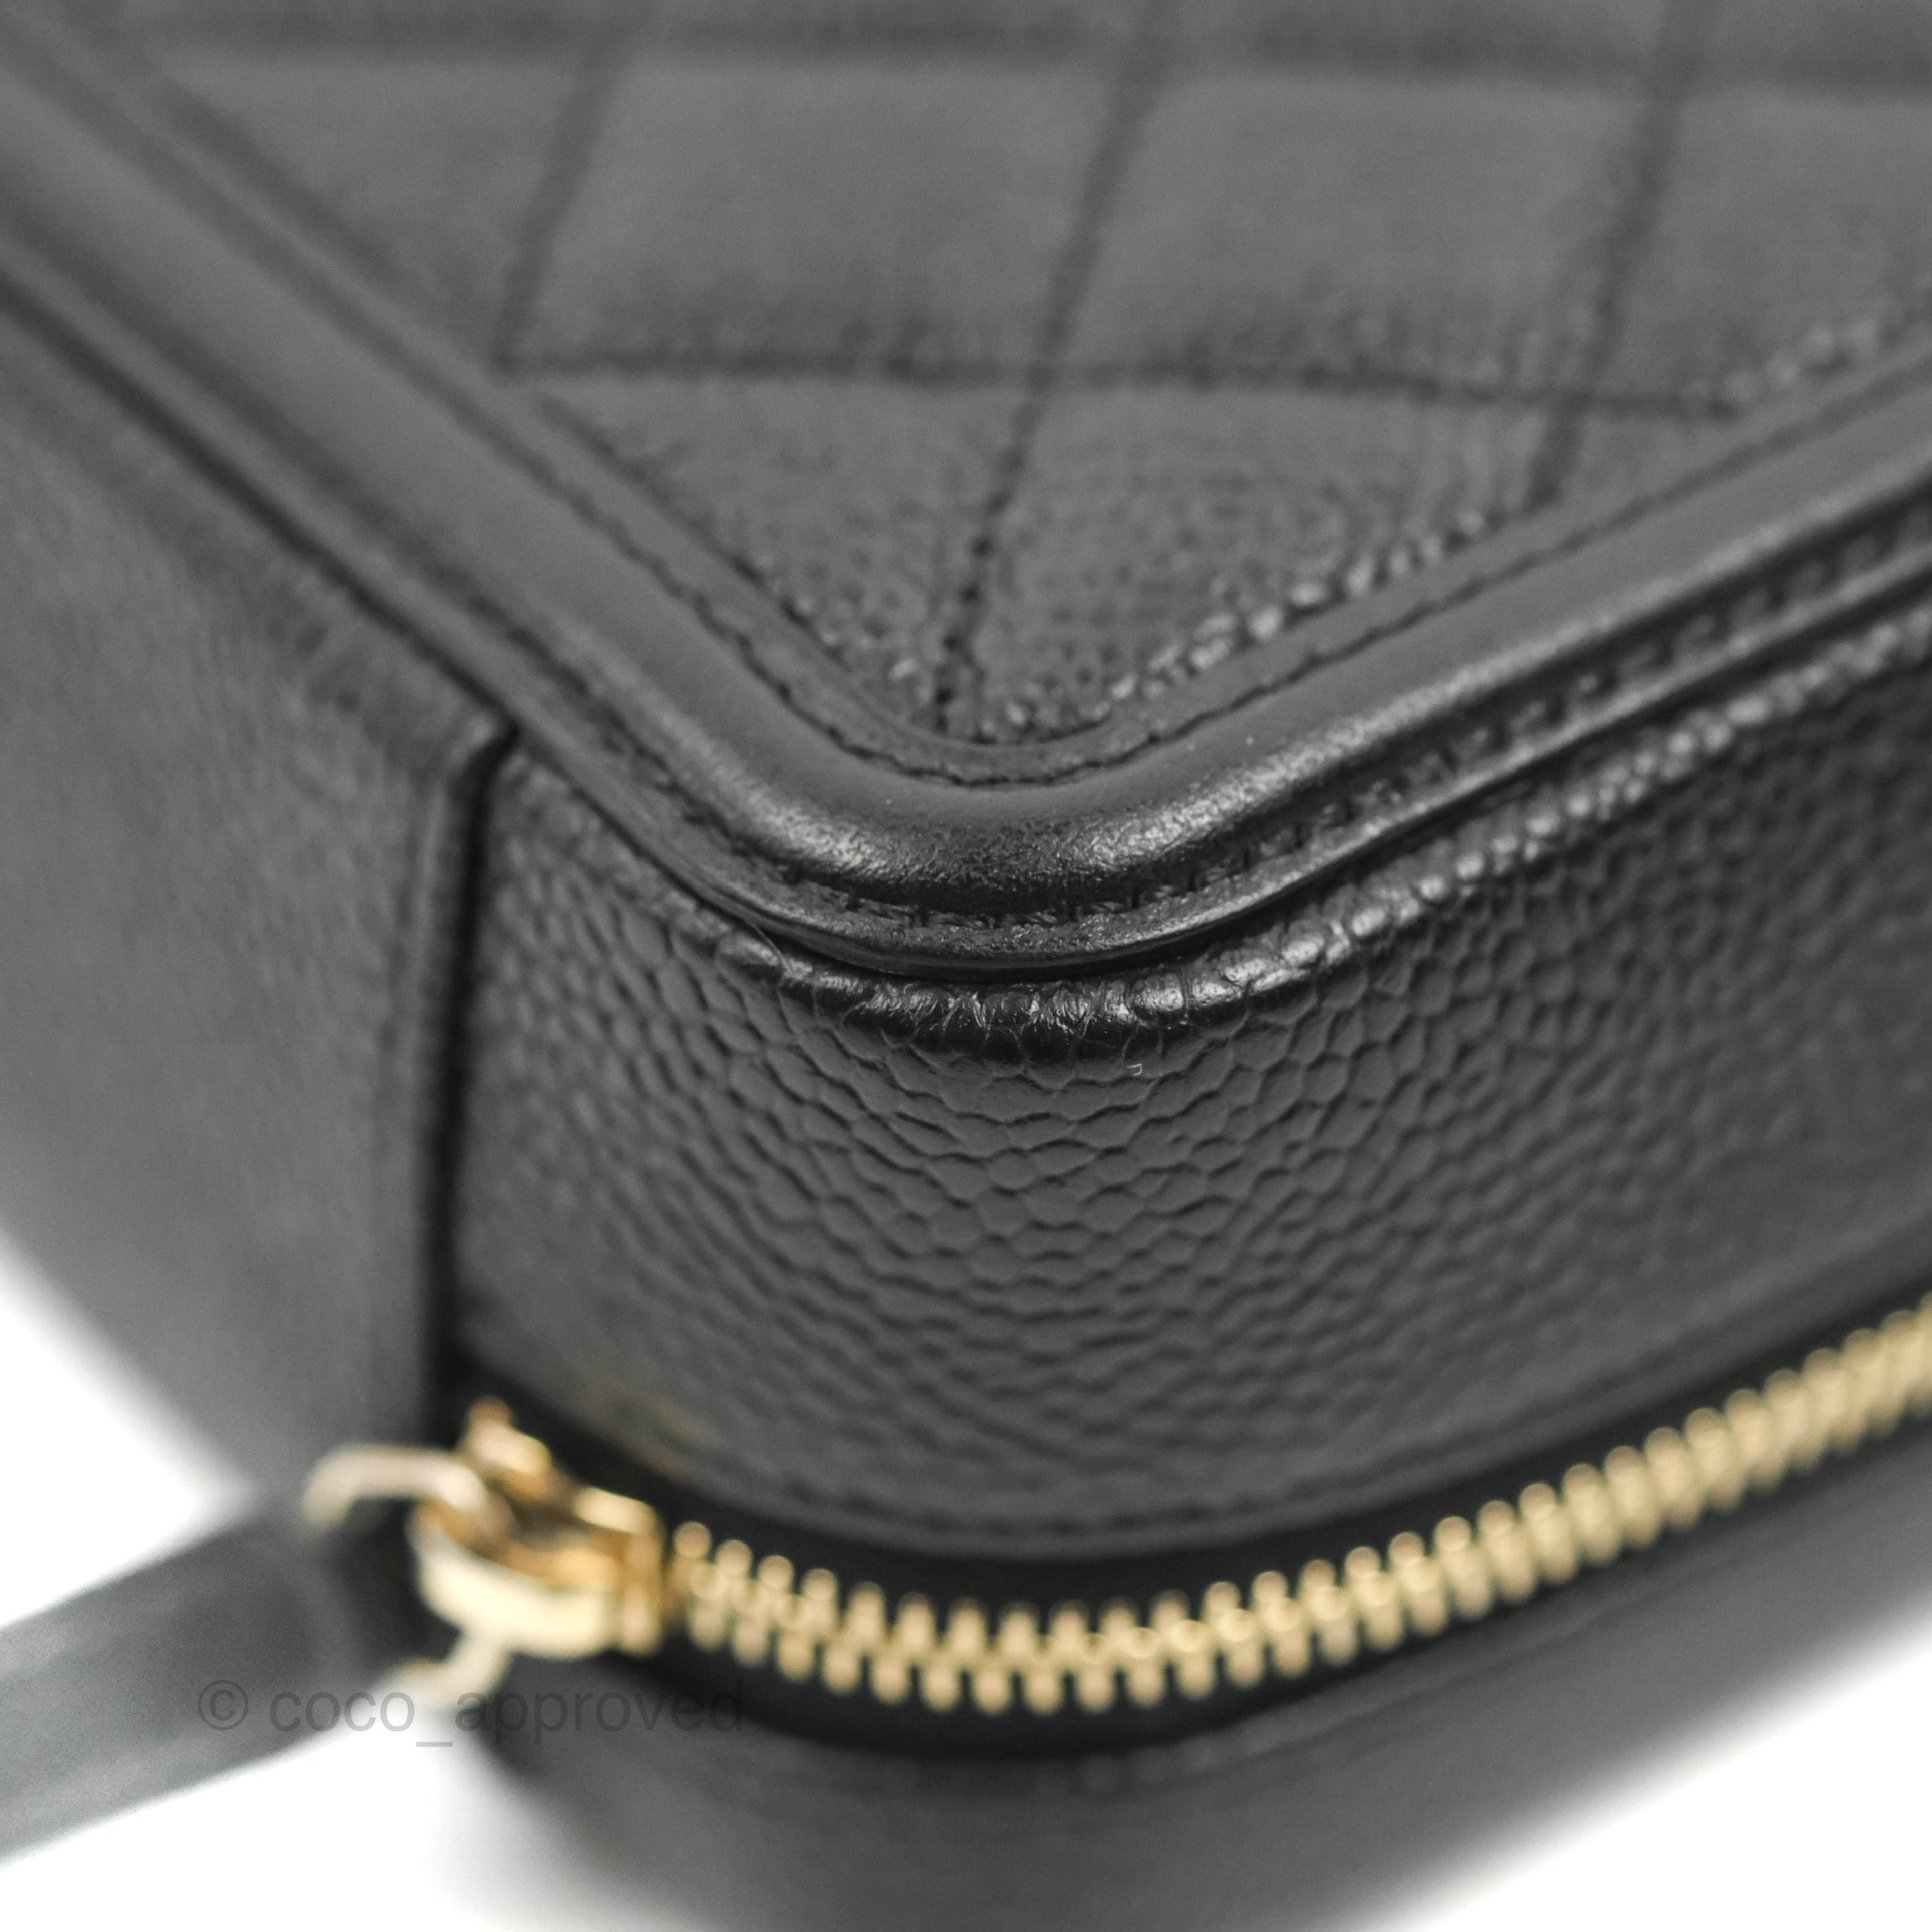 Blue Chanel CC Vanity Bag – Designer Revival